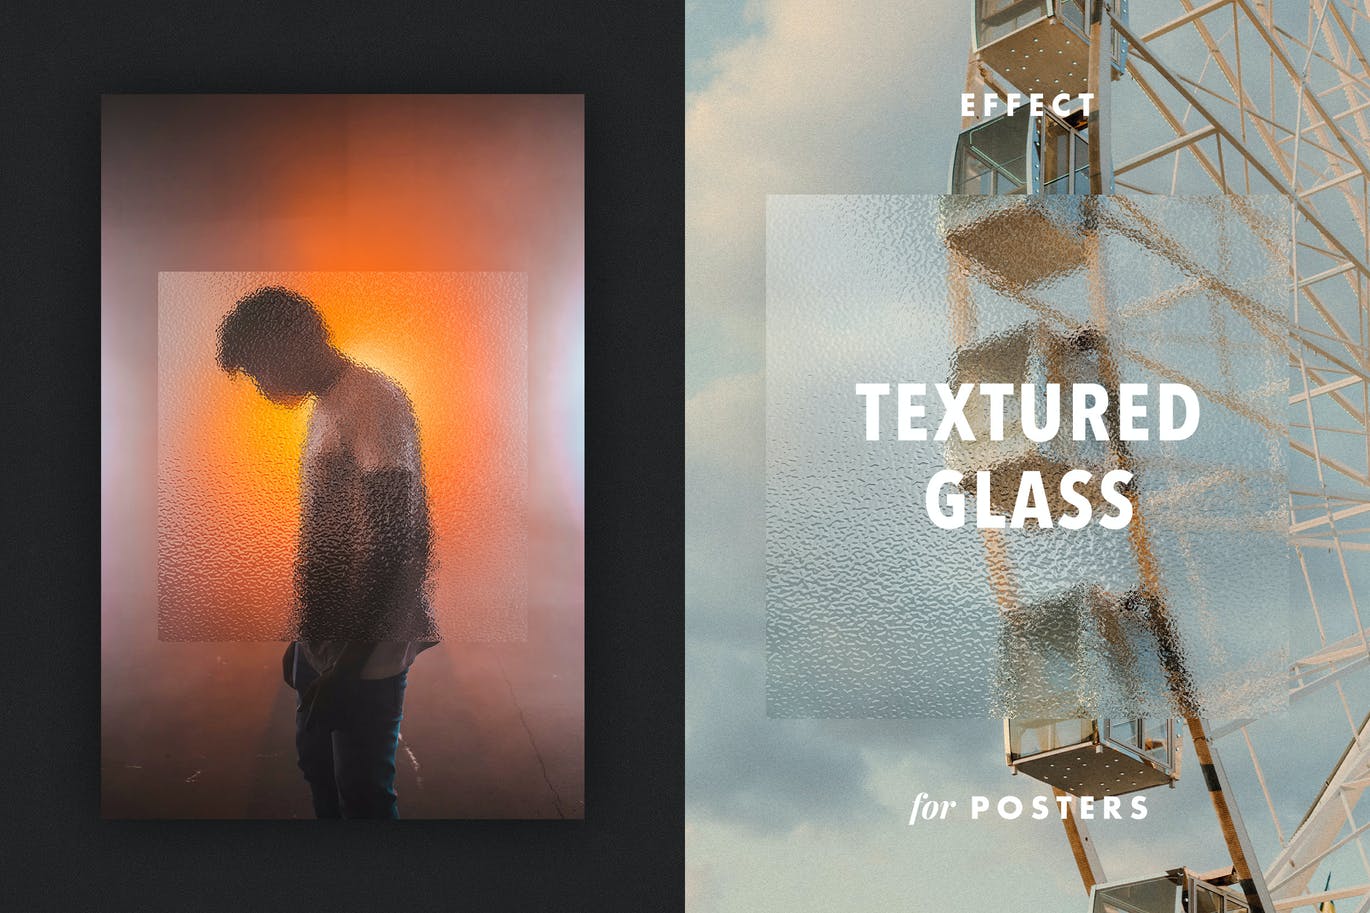 磨砂玻璃纹理效果psd模板 Textured Glass Effect for Posters 插件预设 第1张